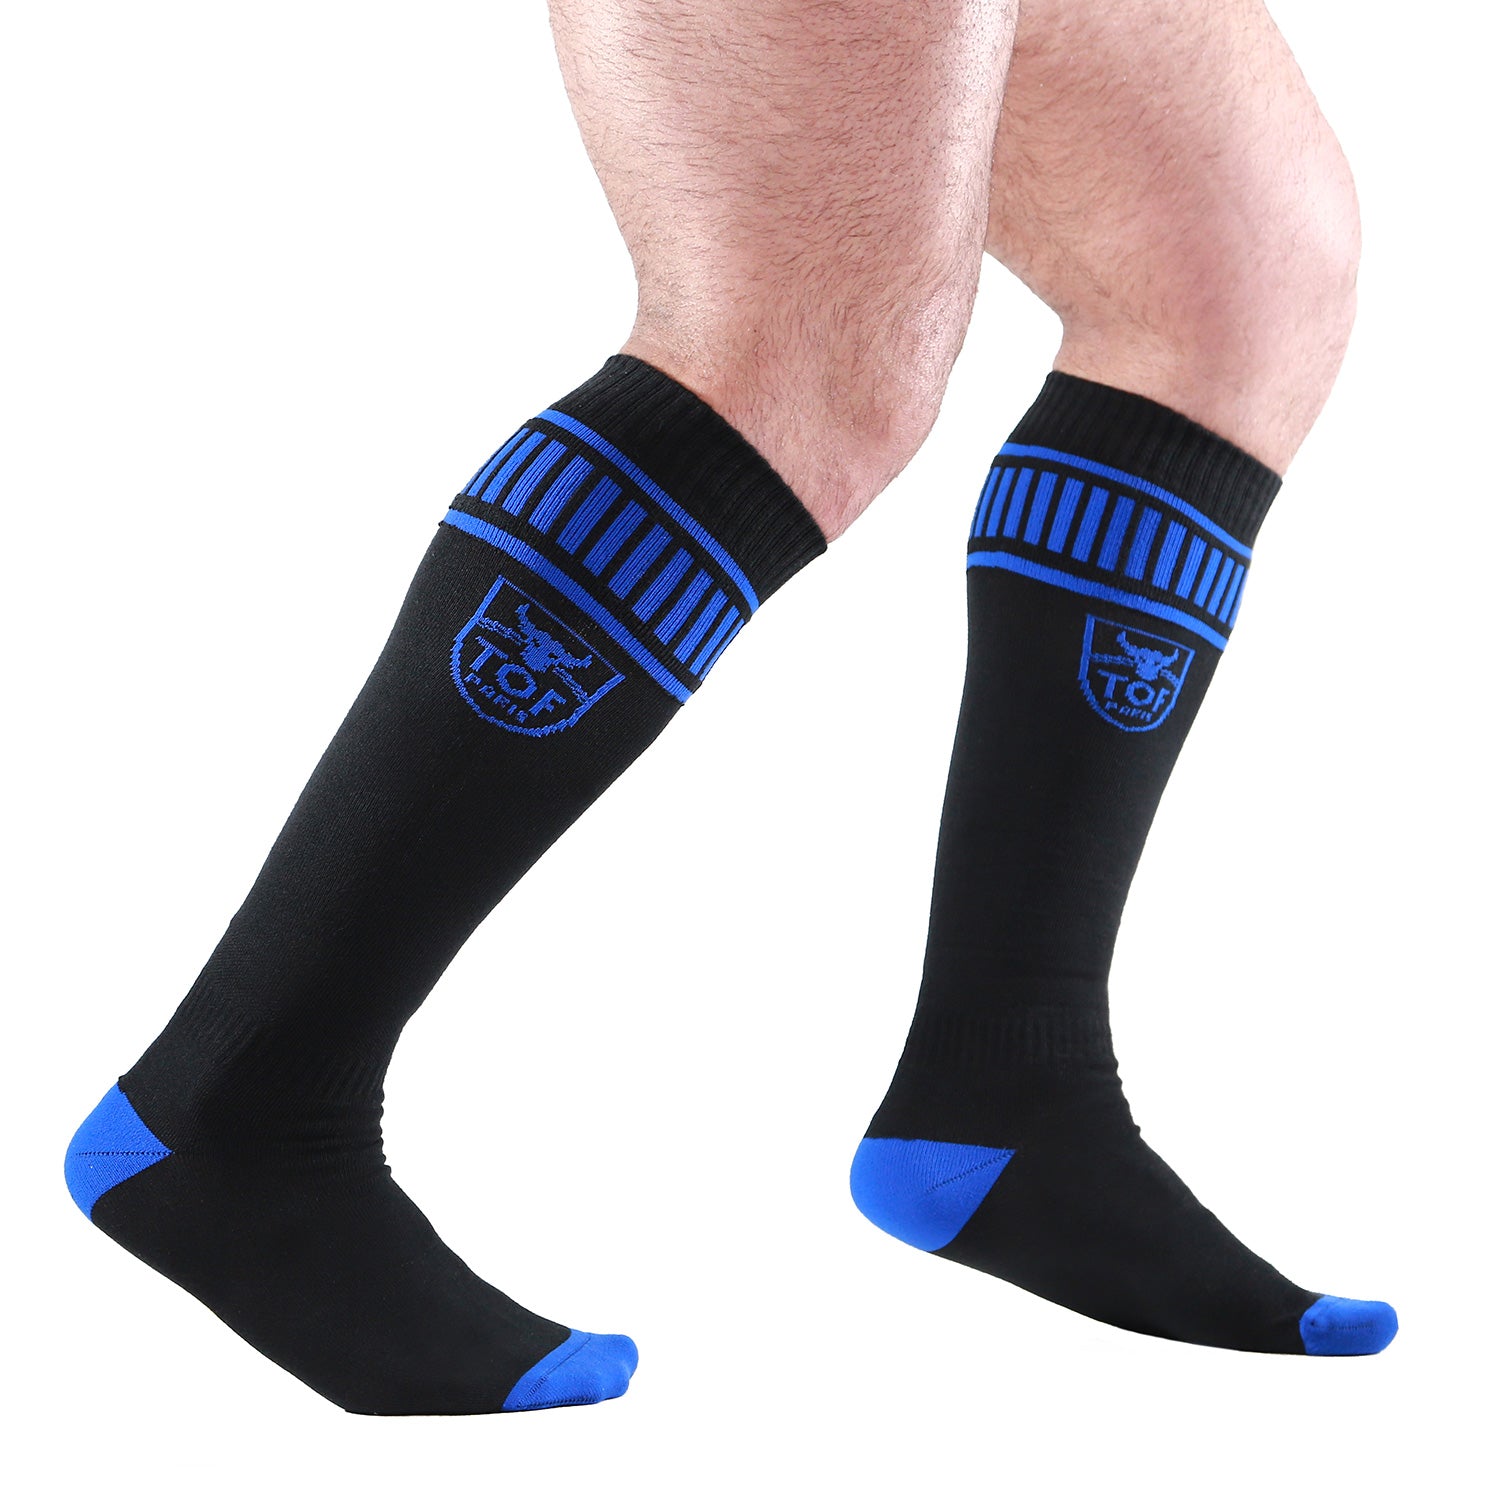 Footish Socks - Black/Blue